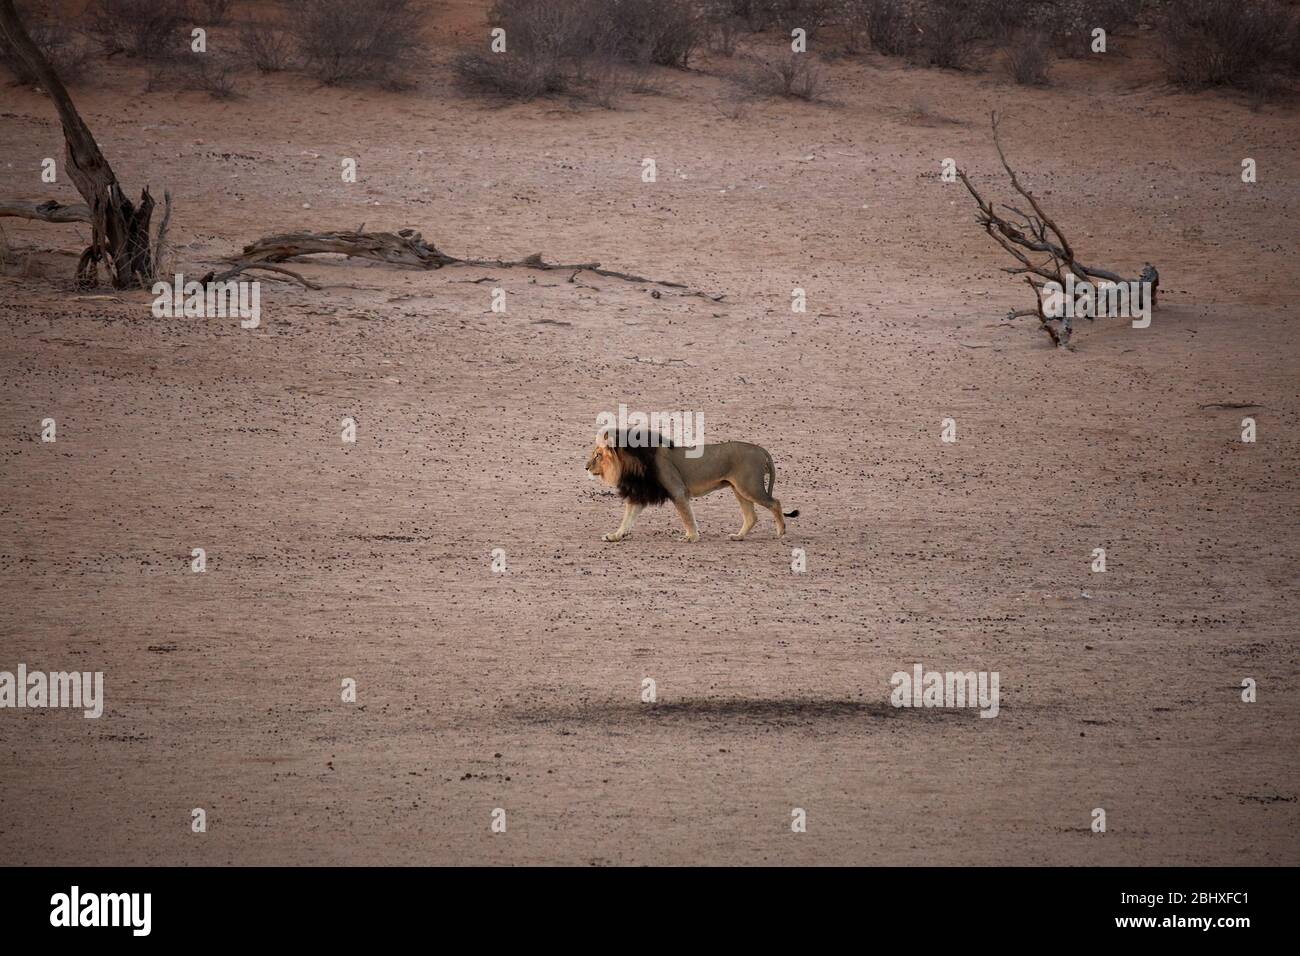 Kalahari Black-maned lion (Panthera leo), by Kalahari Tented Camp, Kgalagadi Transfrontier Park, South Africa Stock Photo